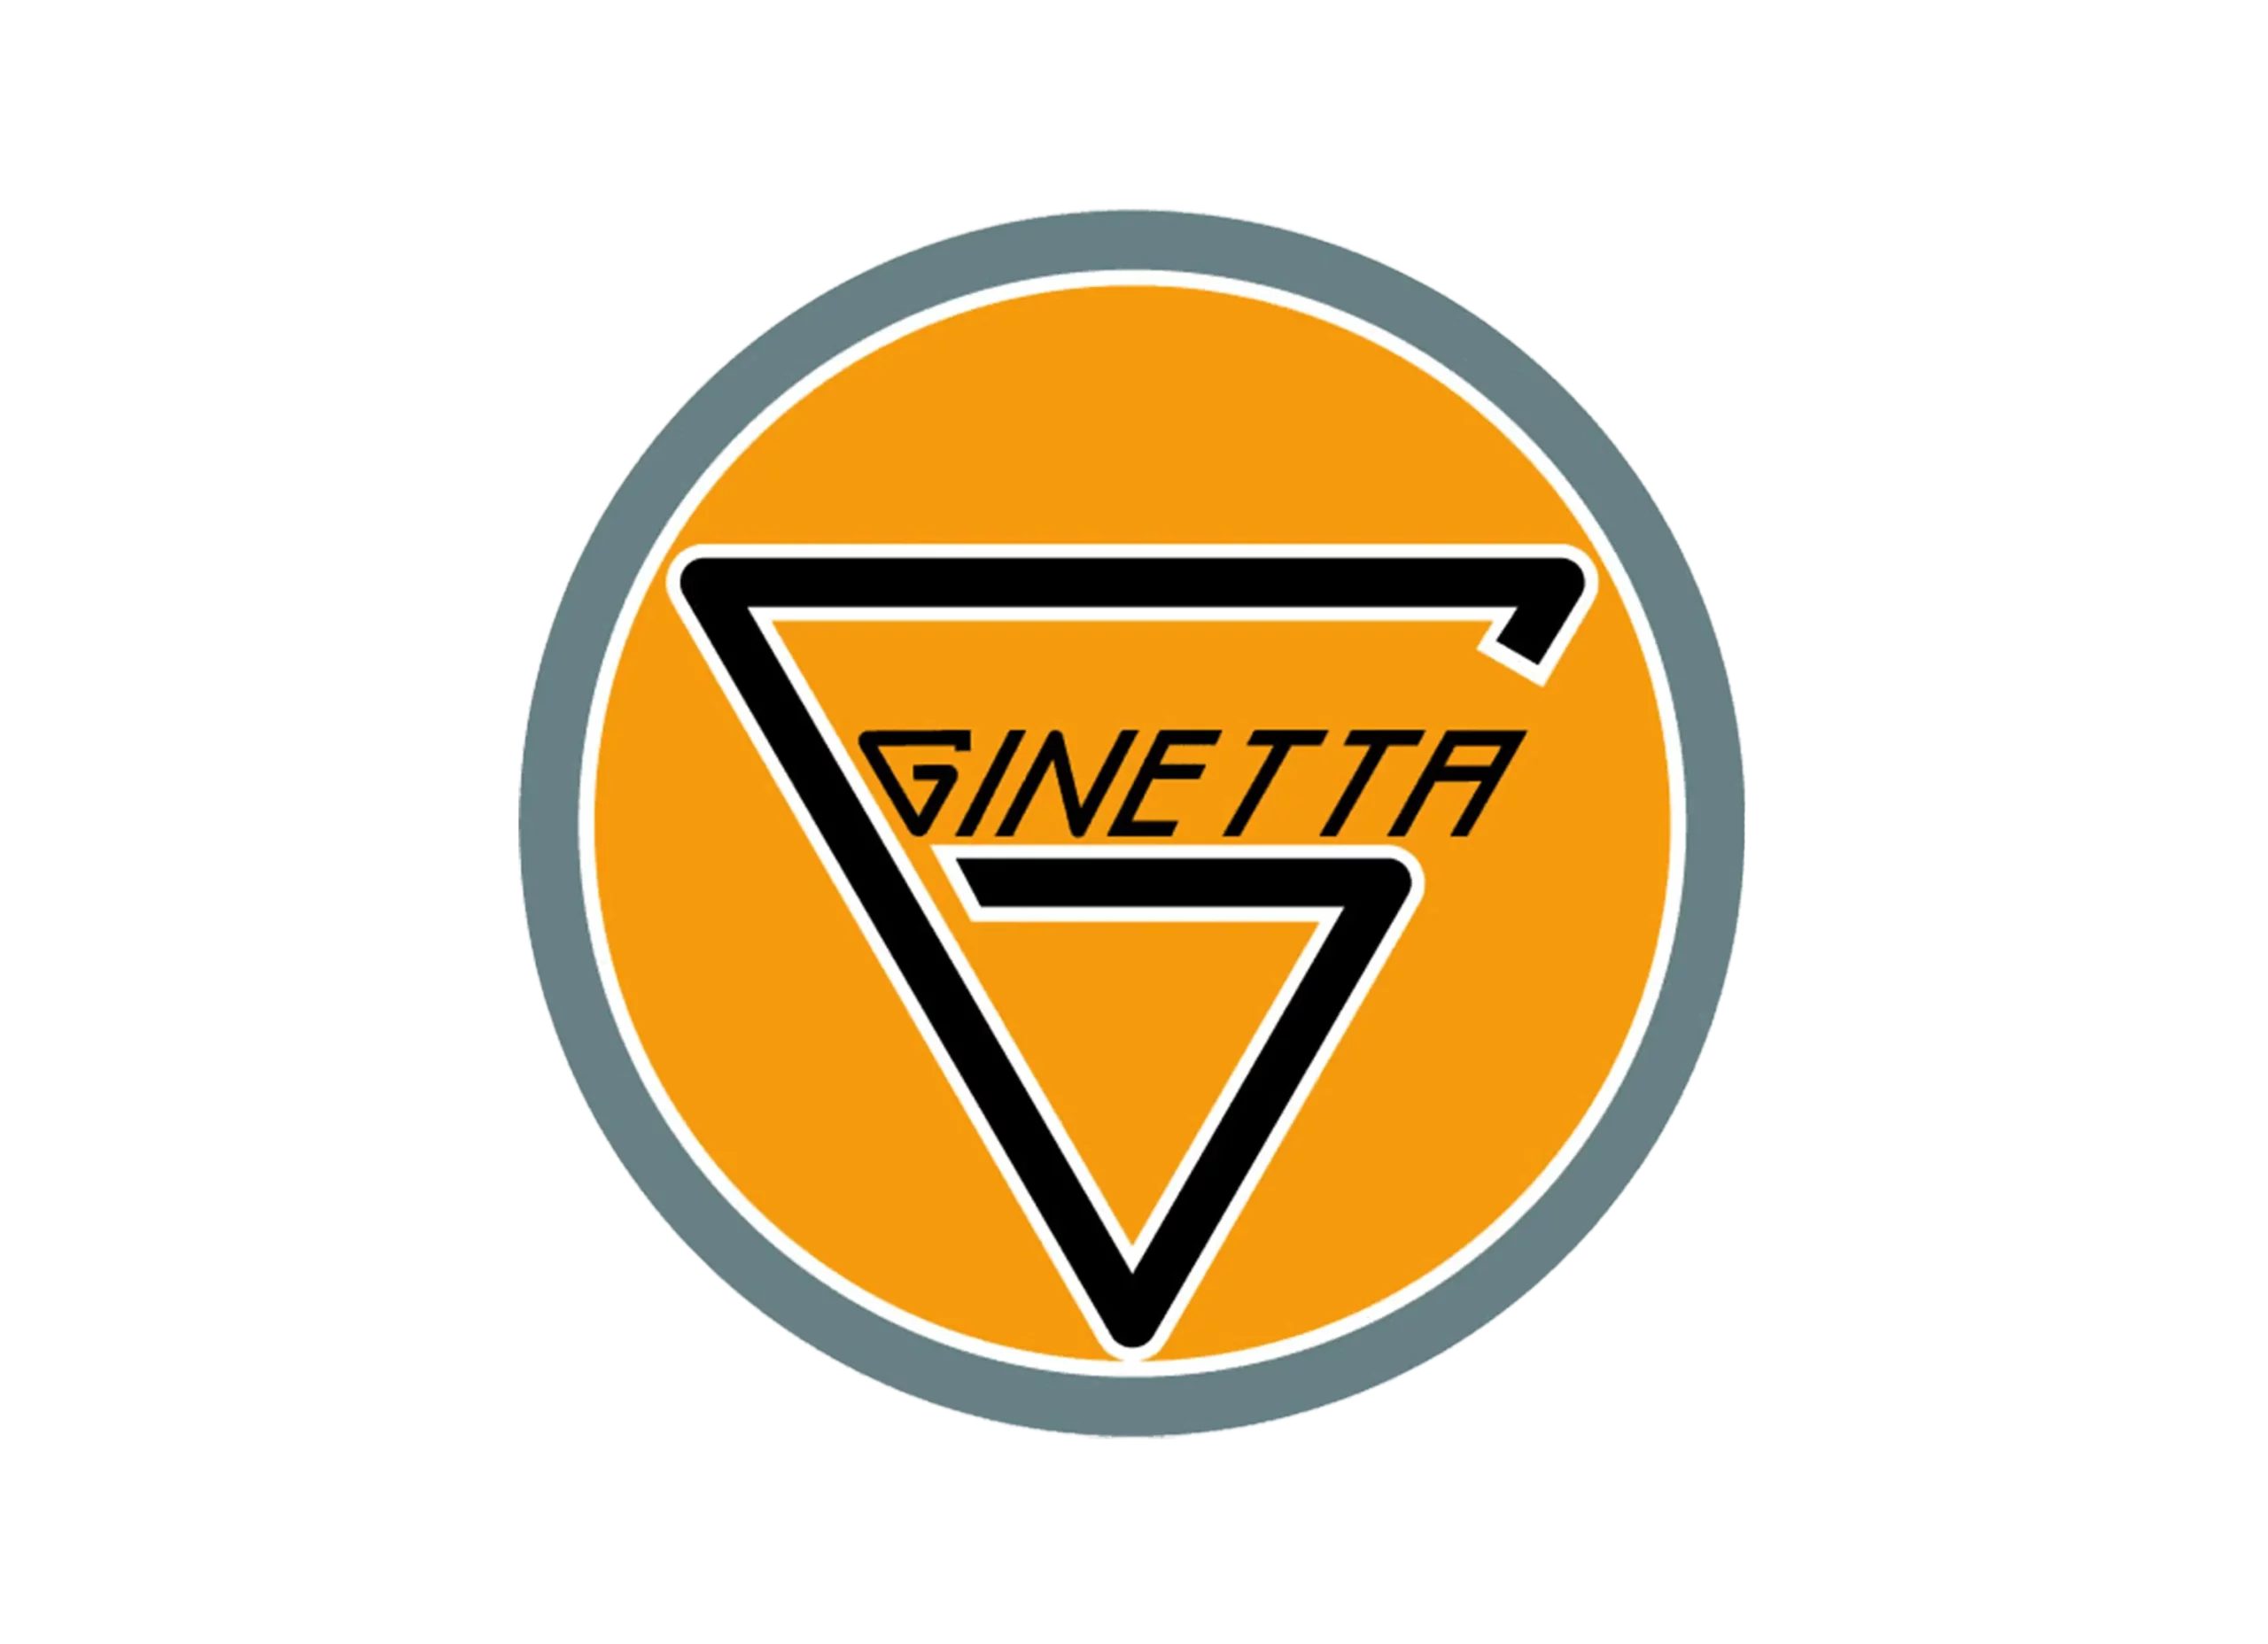 Ginetta logo 1958-present